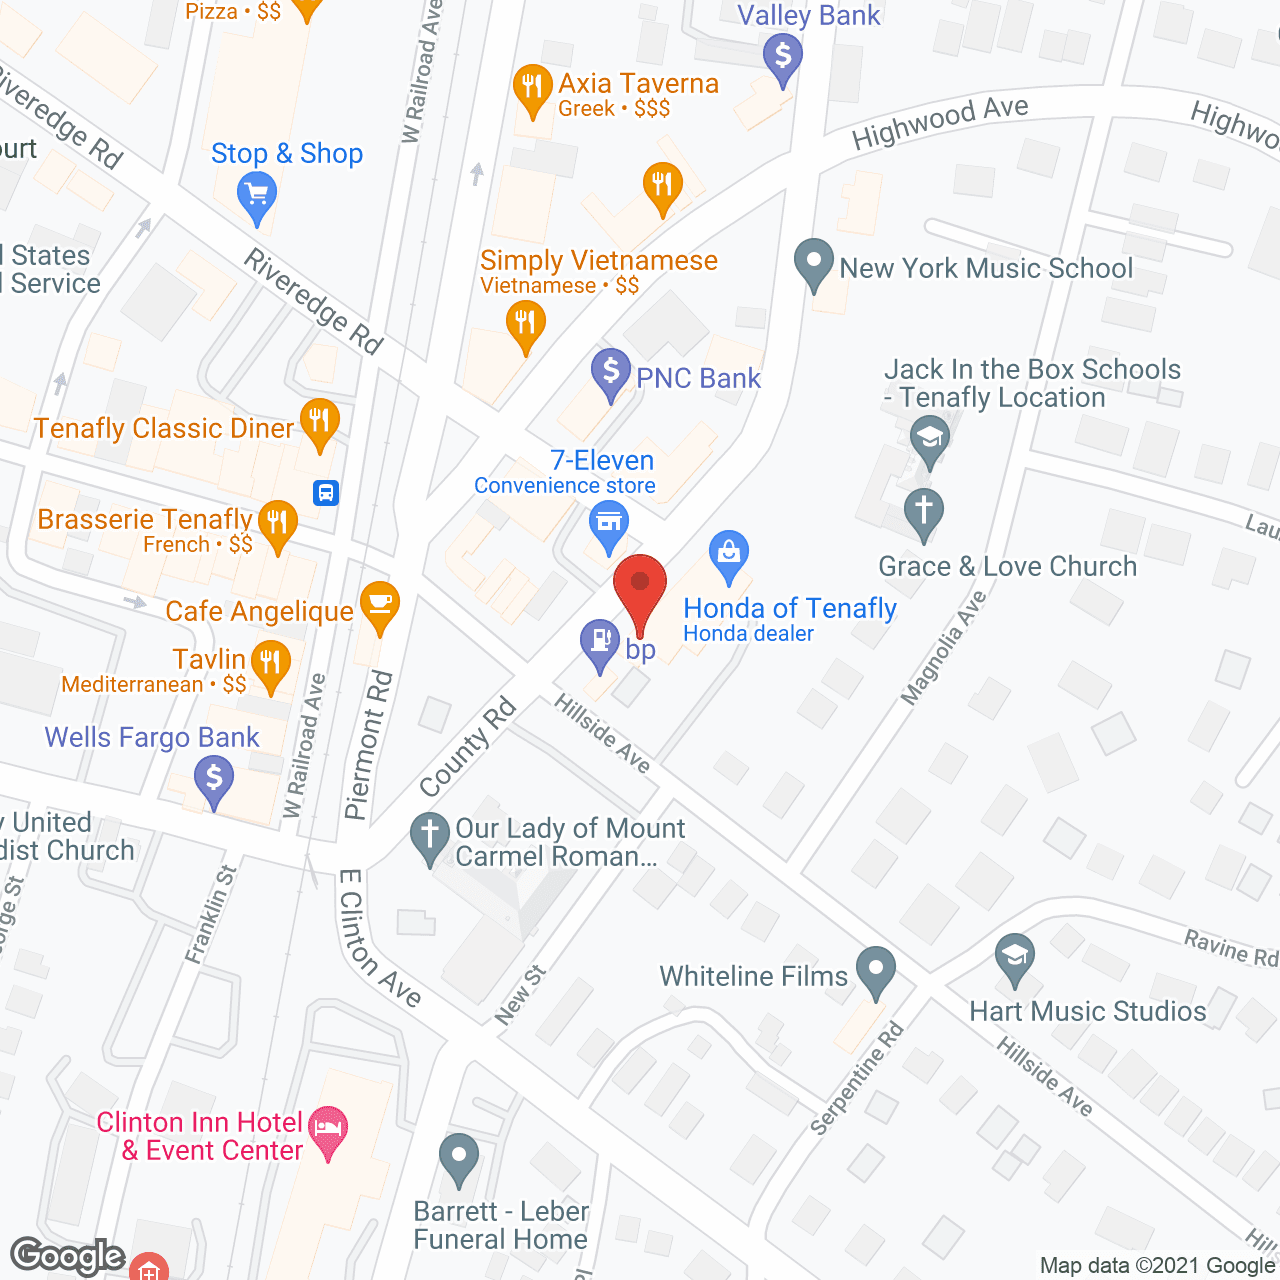 Samaritan Services in google map